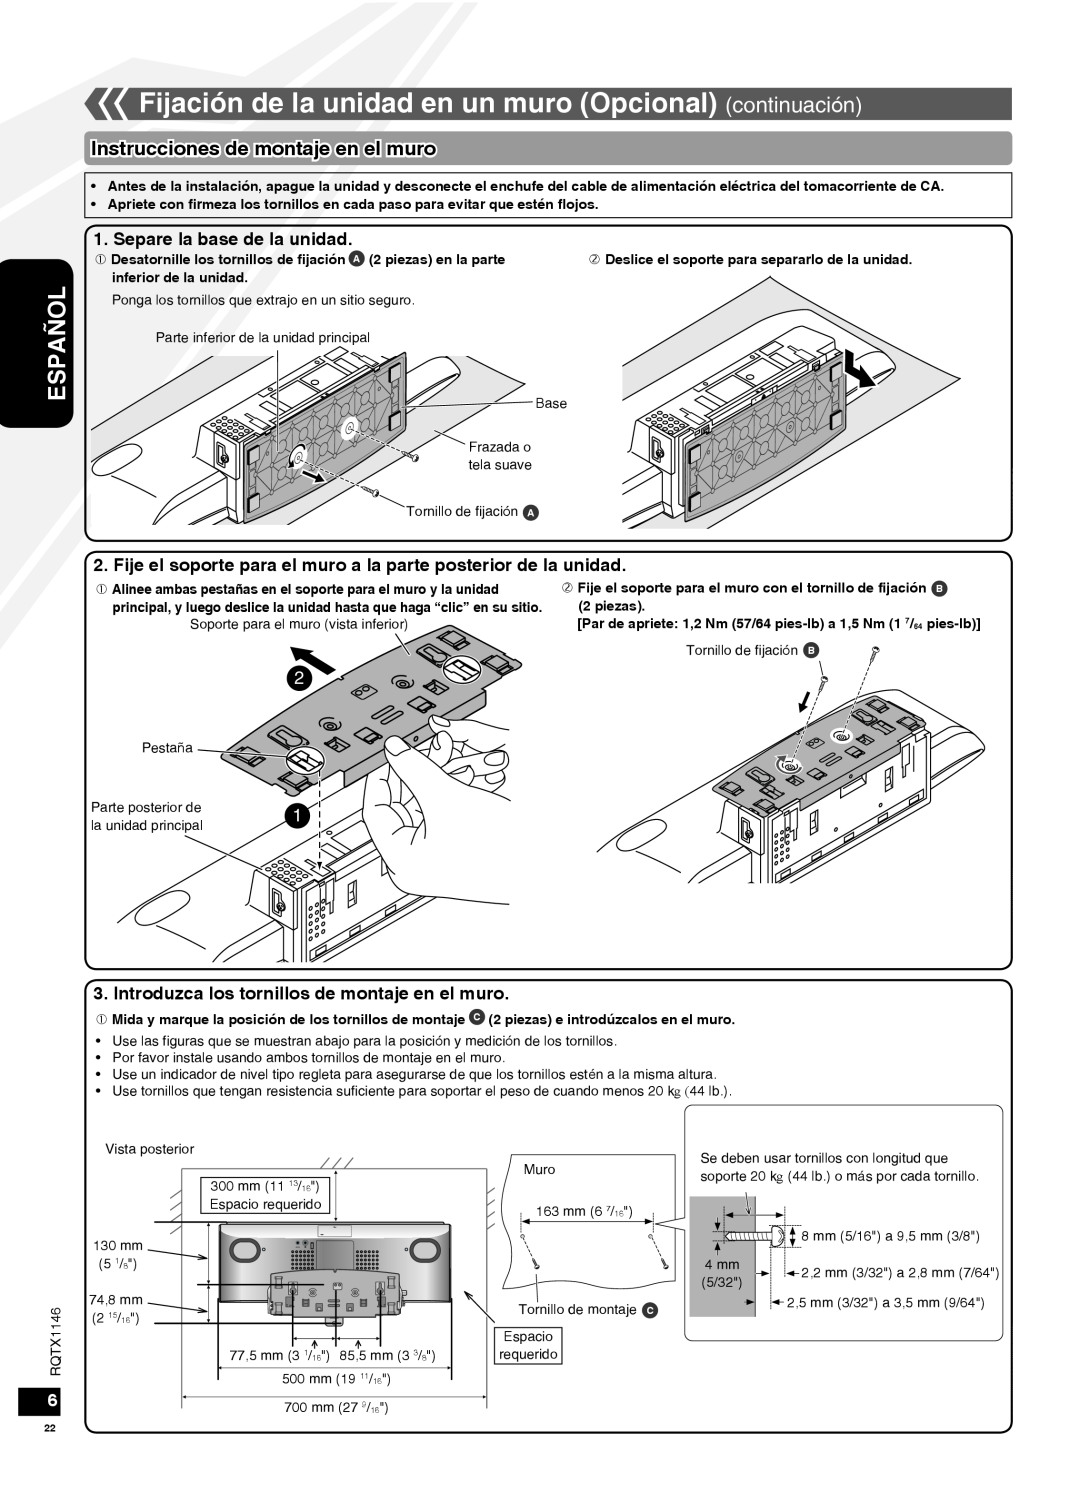 Panasonic SC-HC40 warranty Instrucciones de montaje en el muro, Separe la base de la unidad, Español 